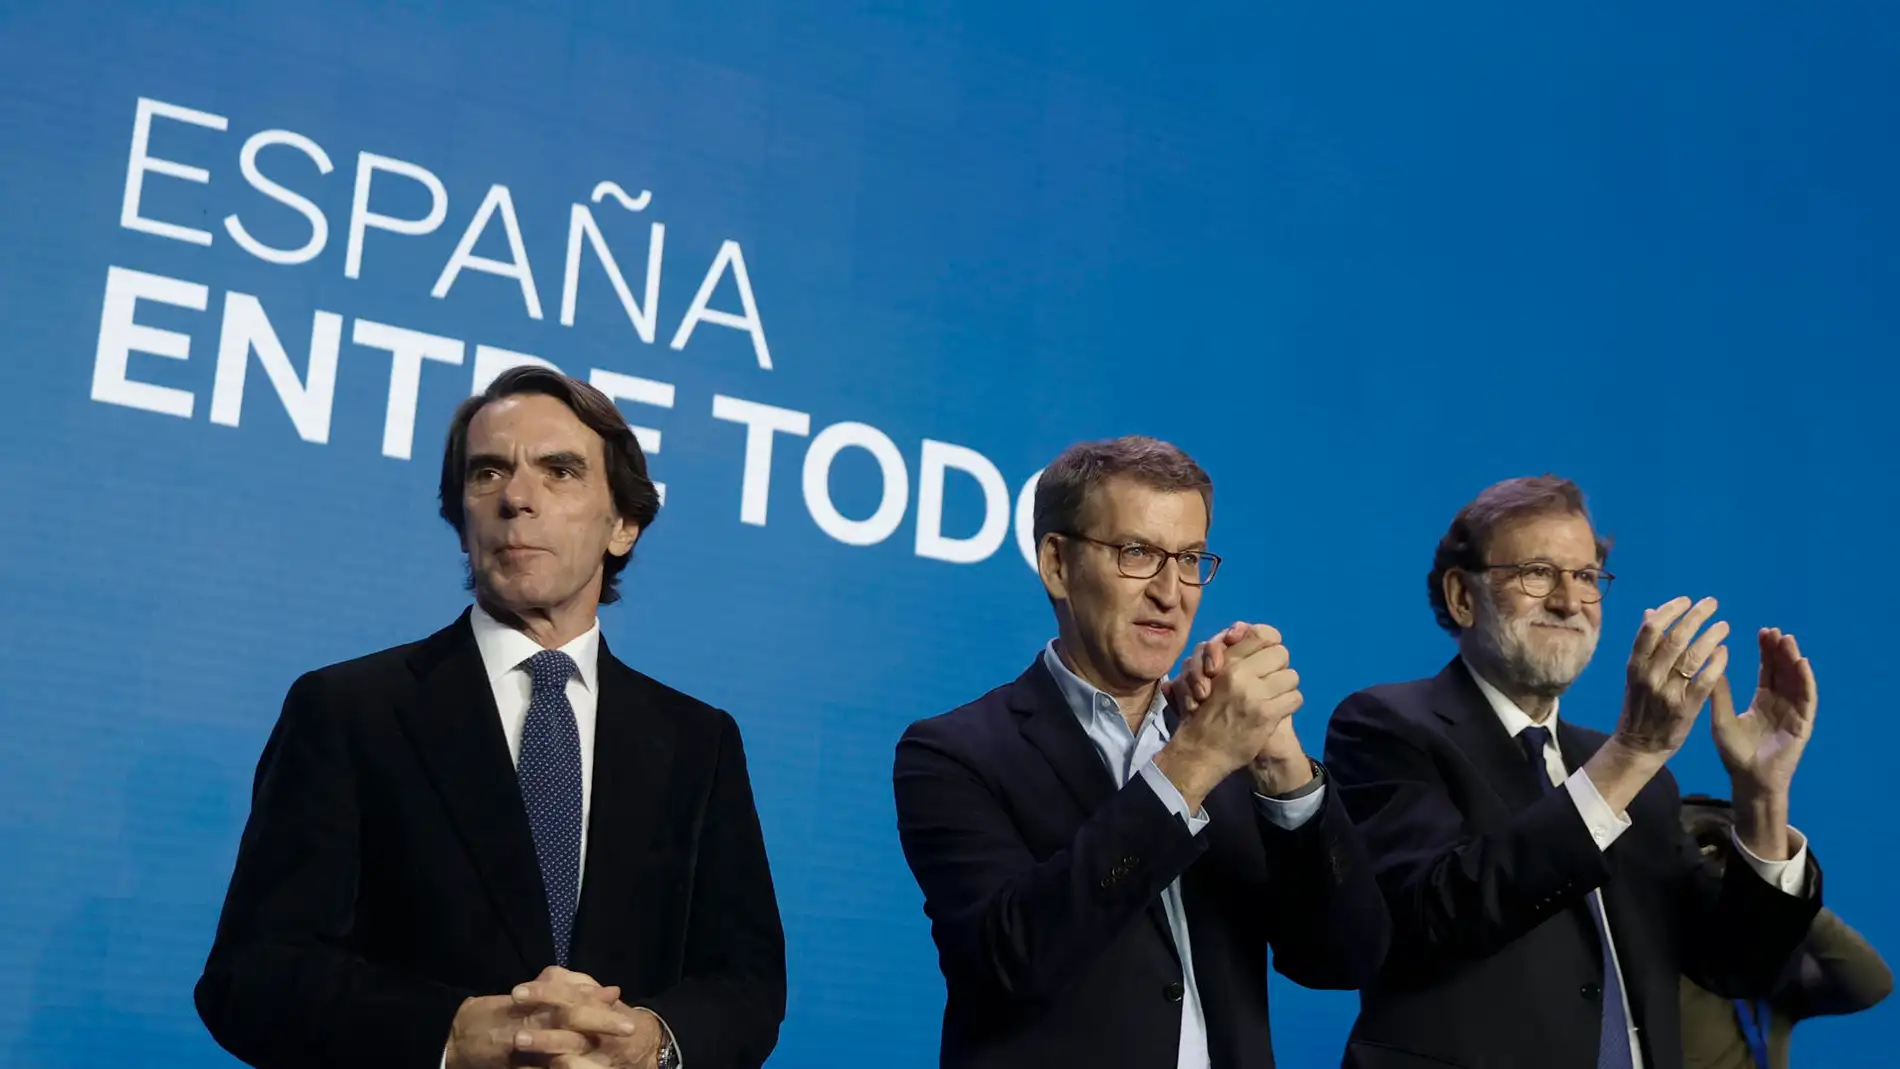 Feijóo presume de la unidad del PP reuniendo a Aznar y Rajoy: "Ahora toca volver a unir a los españoles"